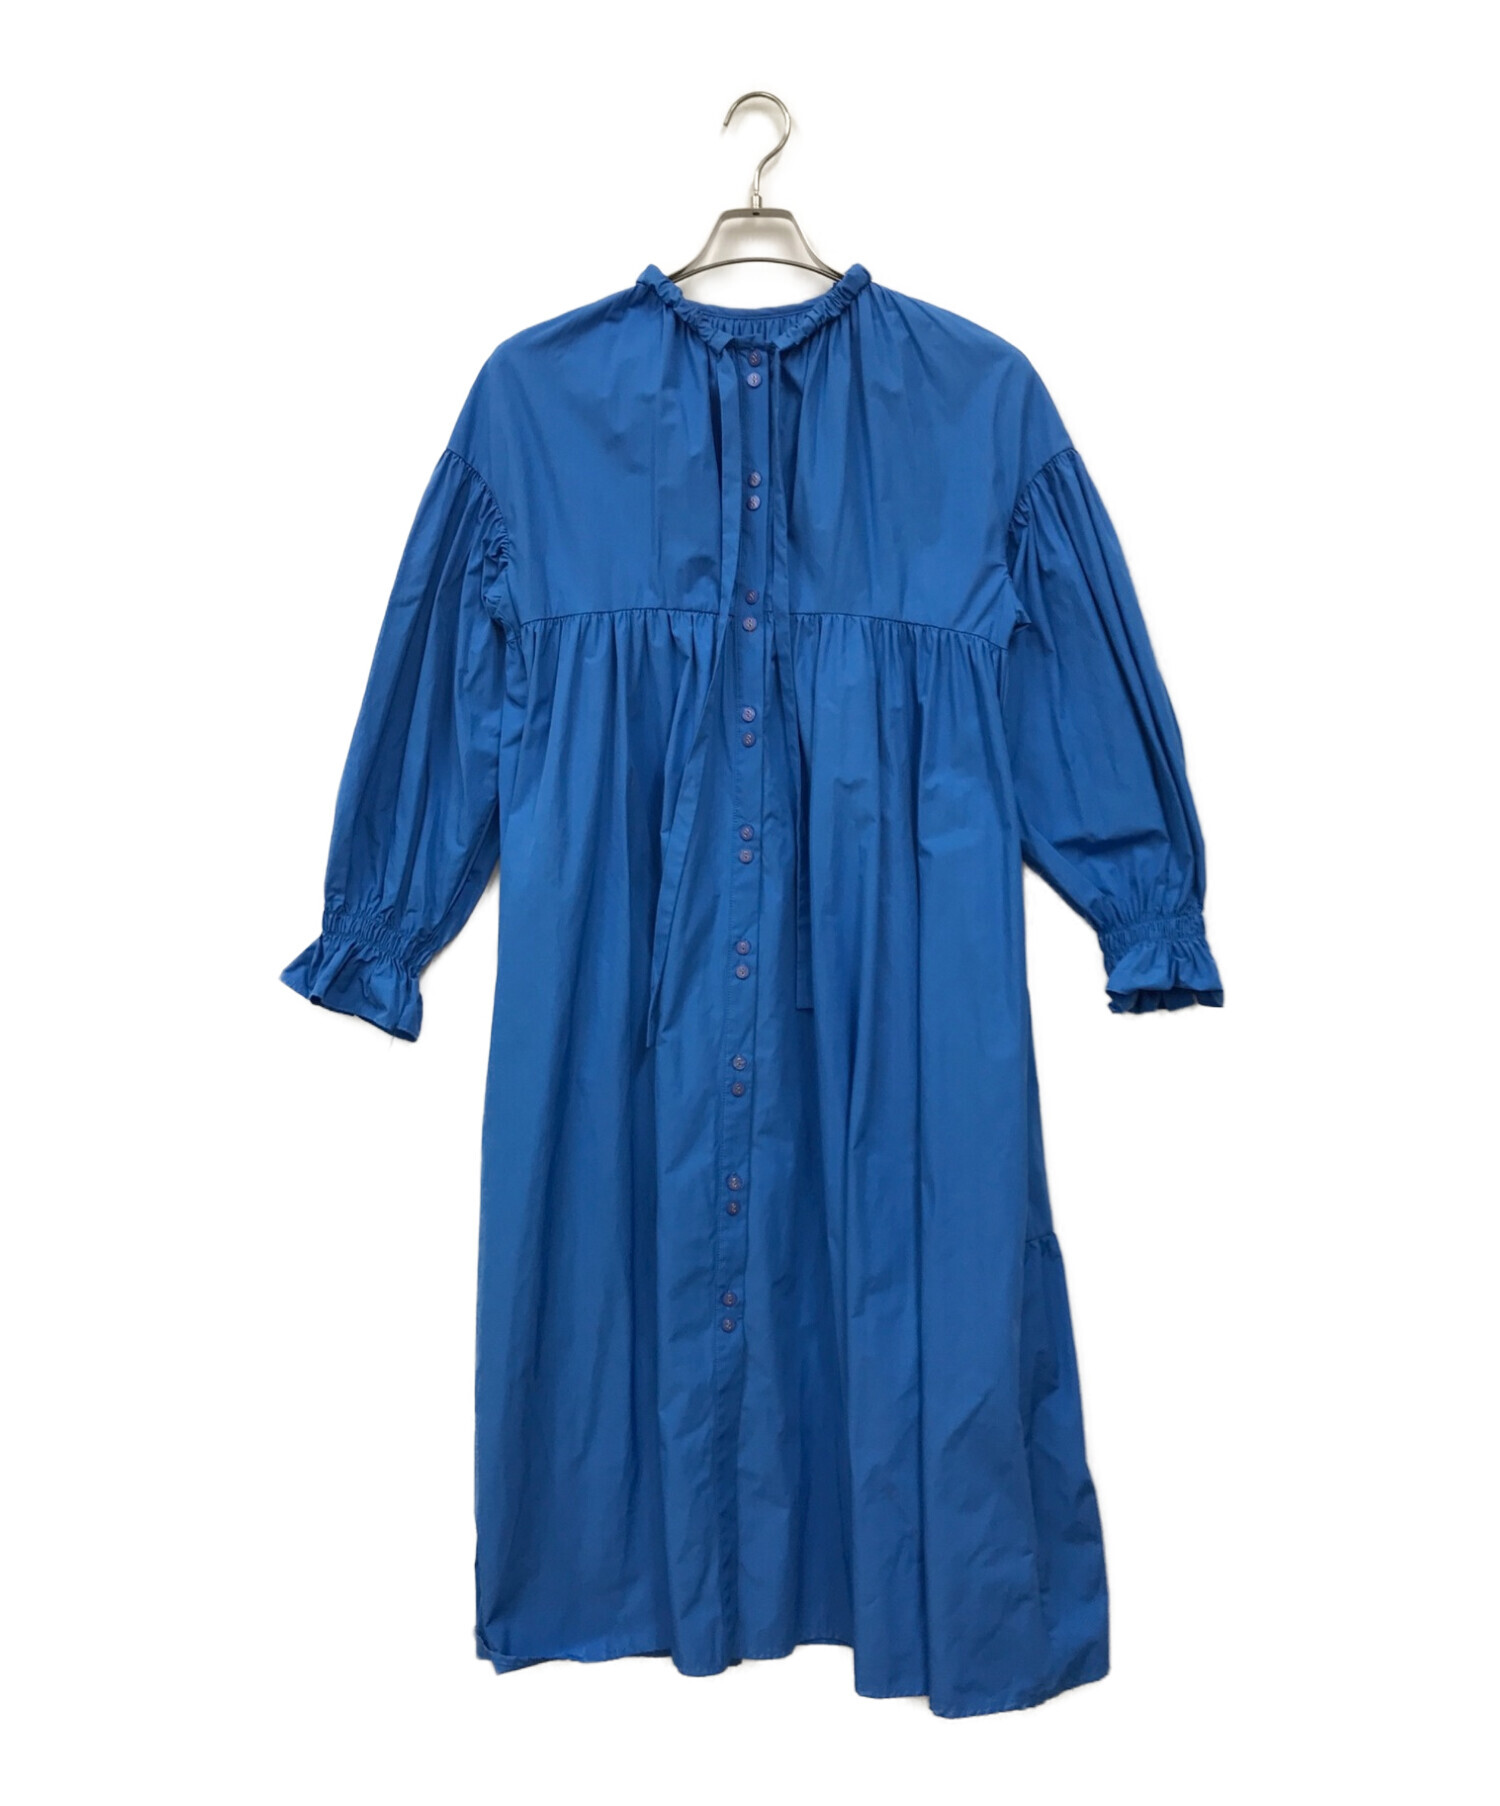 machatt (マチャット) リボンバックティアードドレス ブルー サイズ:FREE